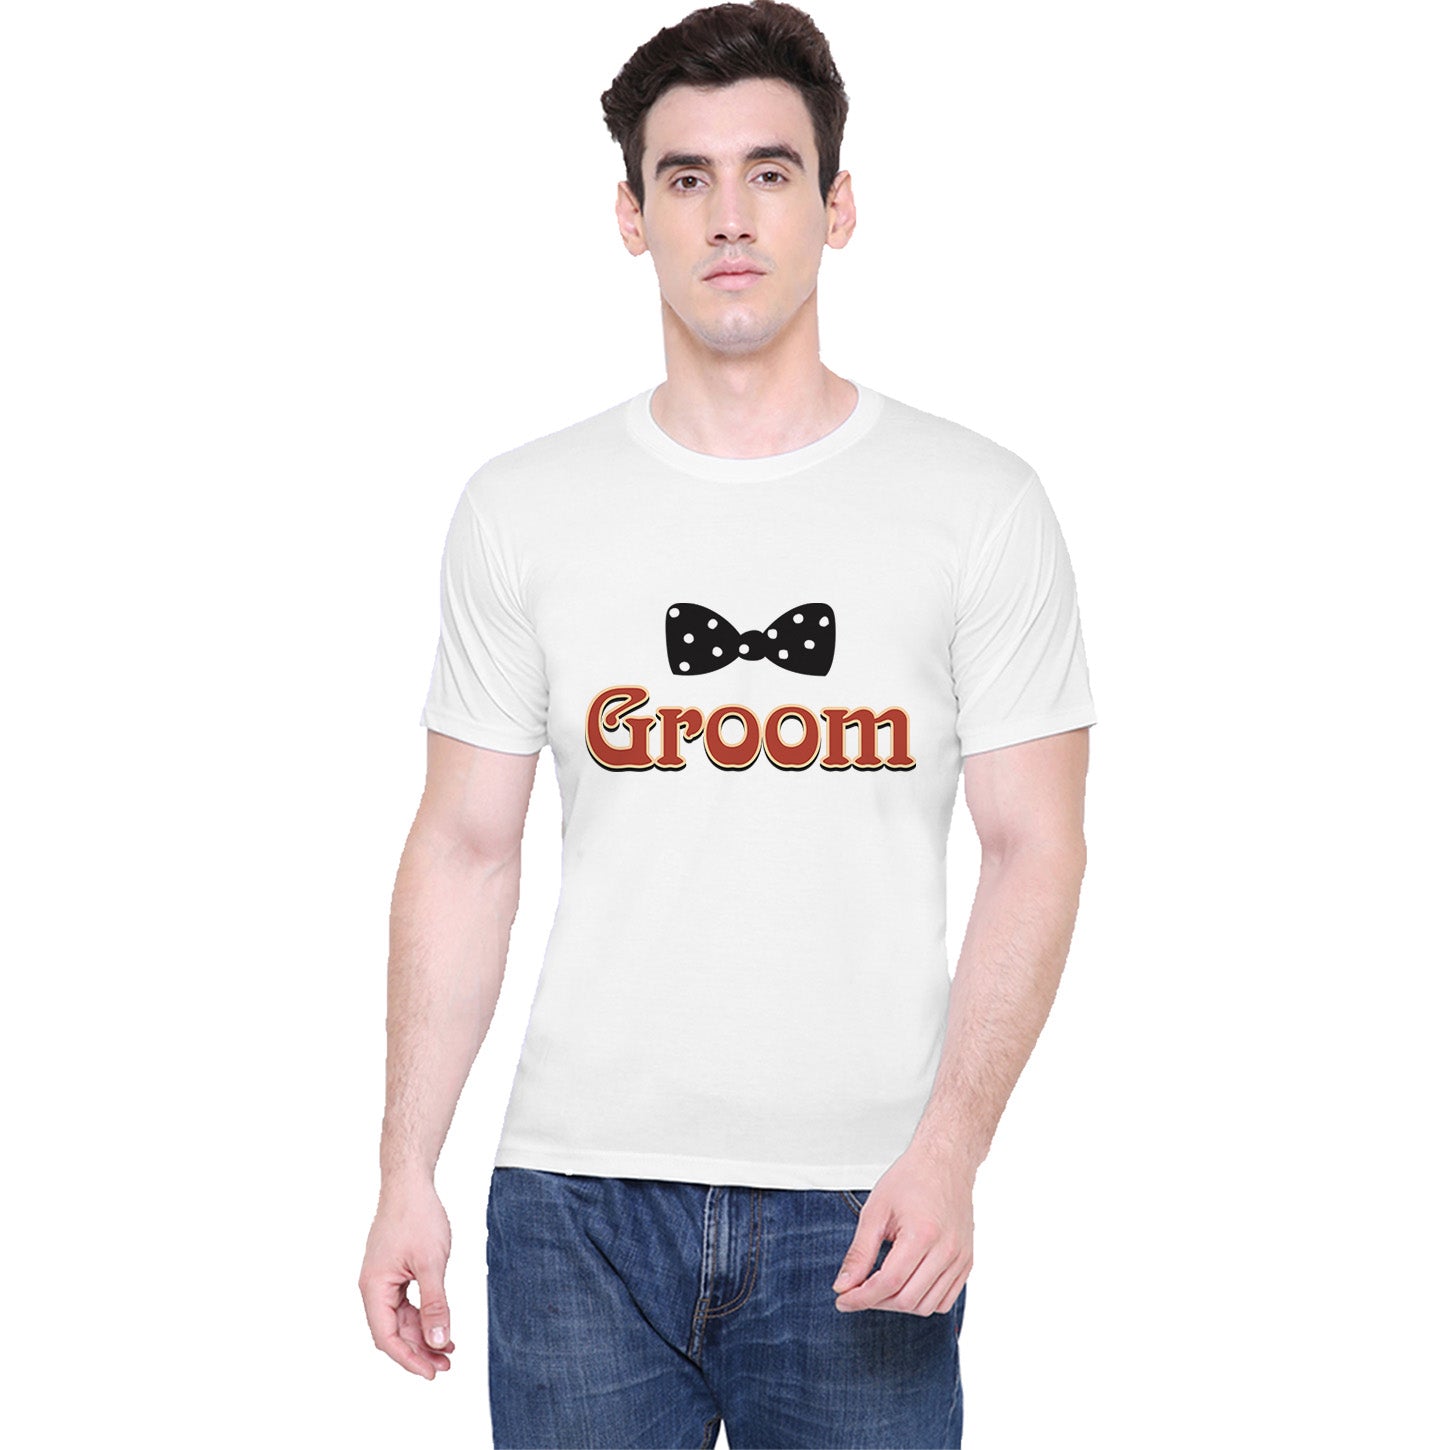 Bride Groom t shirt|wedding tshirts|Couple T shirts- White 06